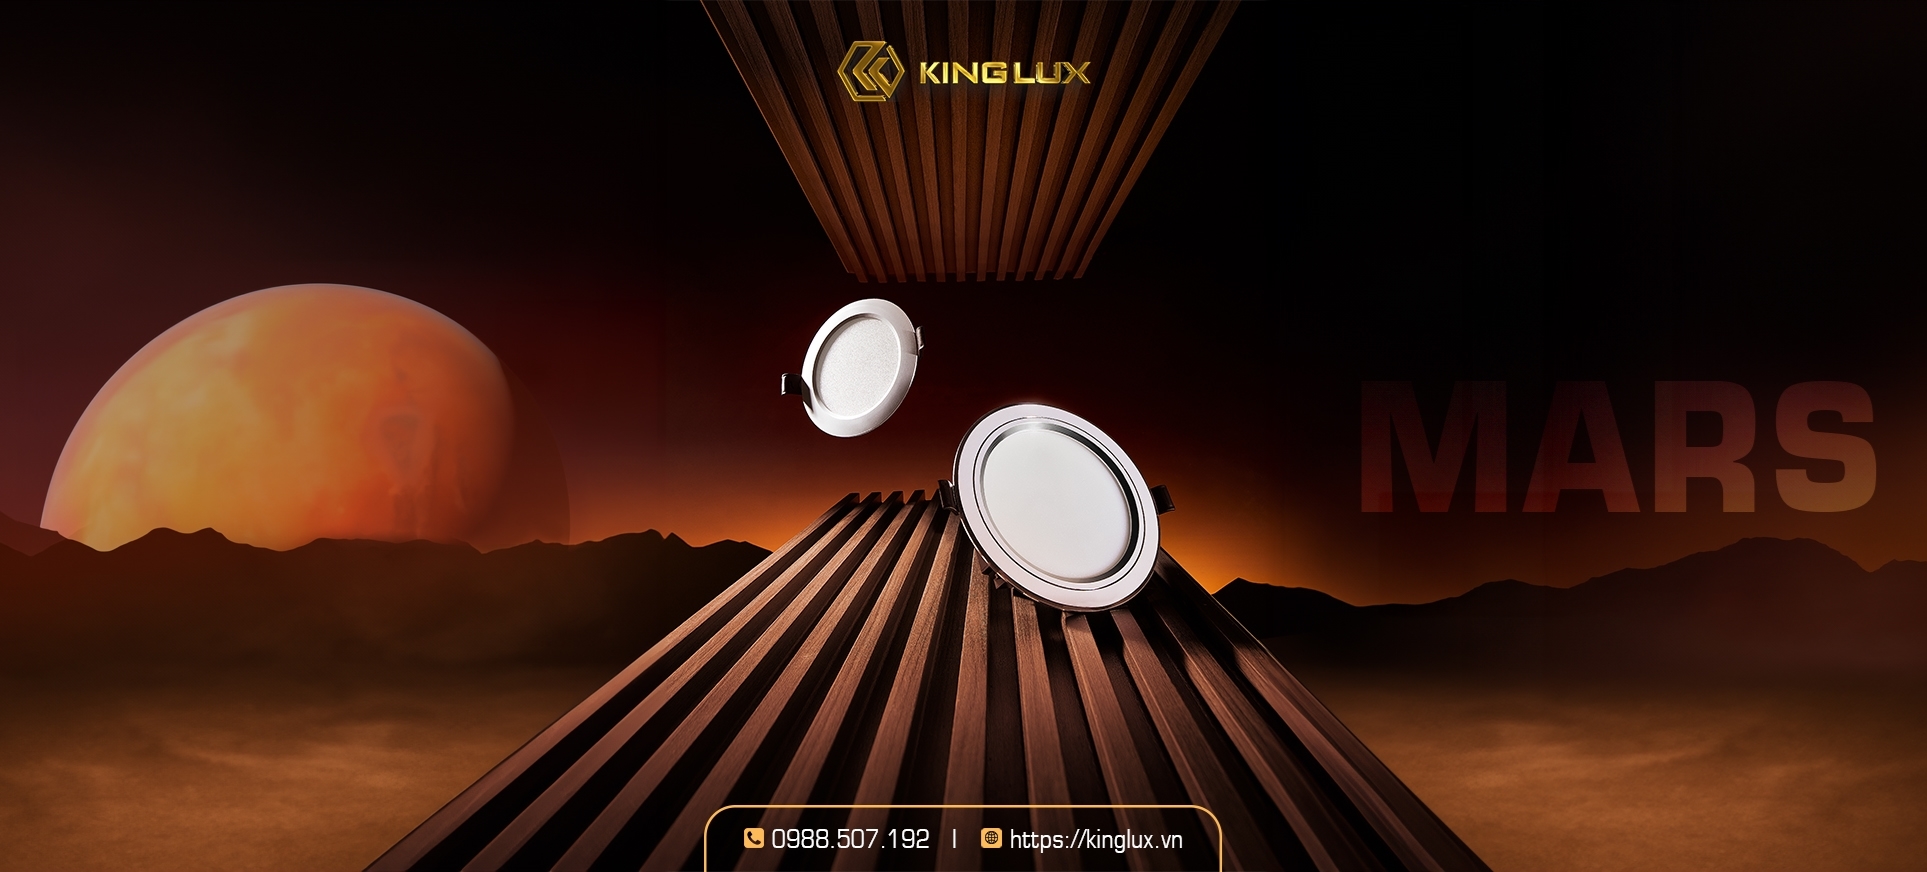 Kinglux - ngoài cung cấp dịch vụ tư vấn về giải pháp chiếu sáng để khách hàng sử dụng thiết bị ánh sáng